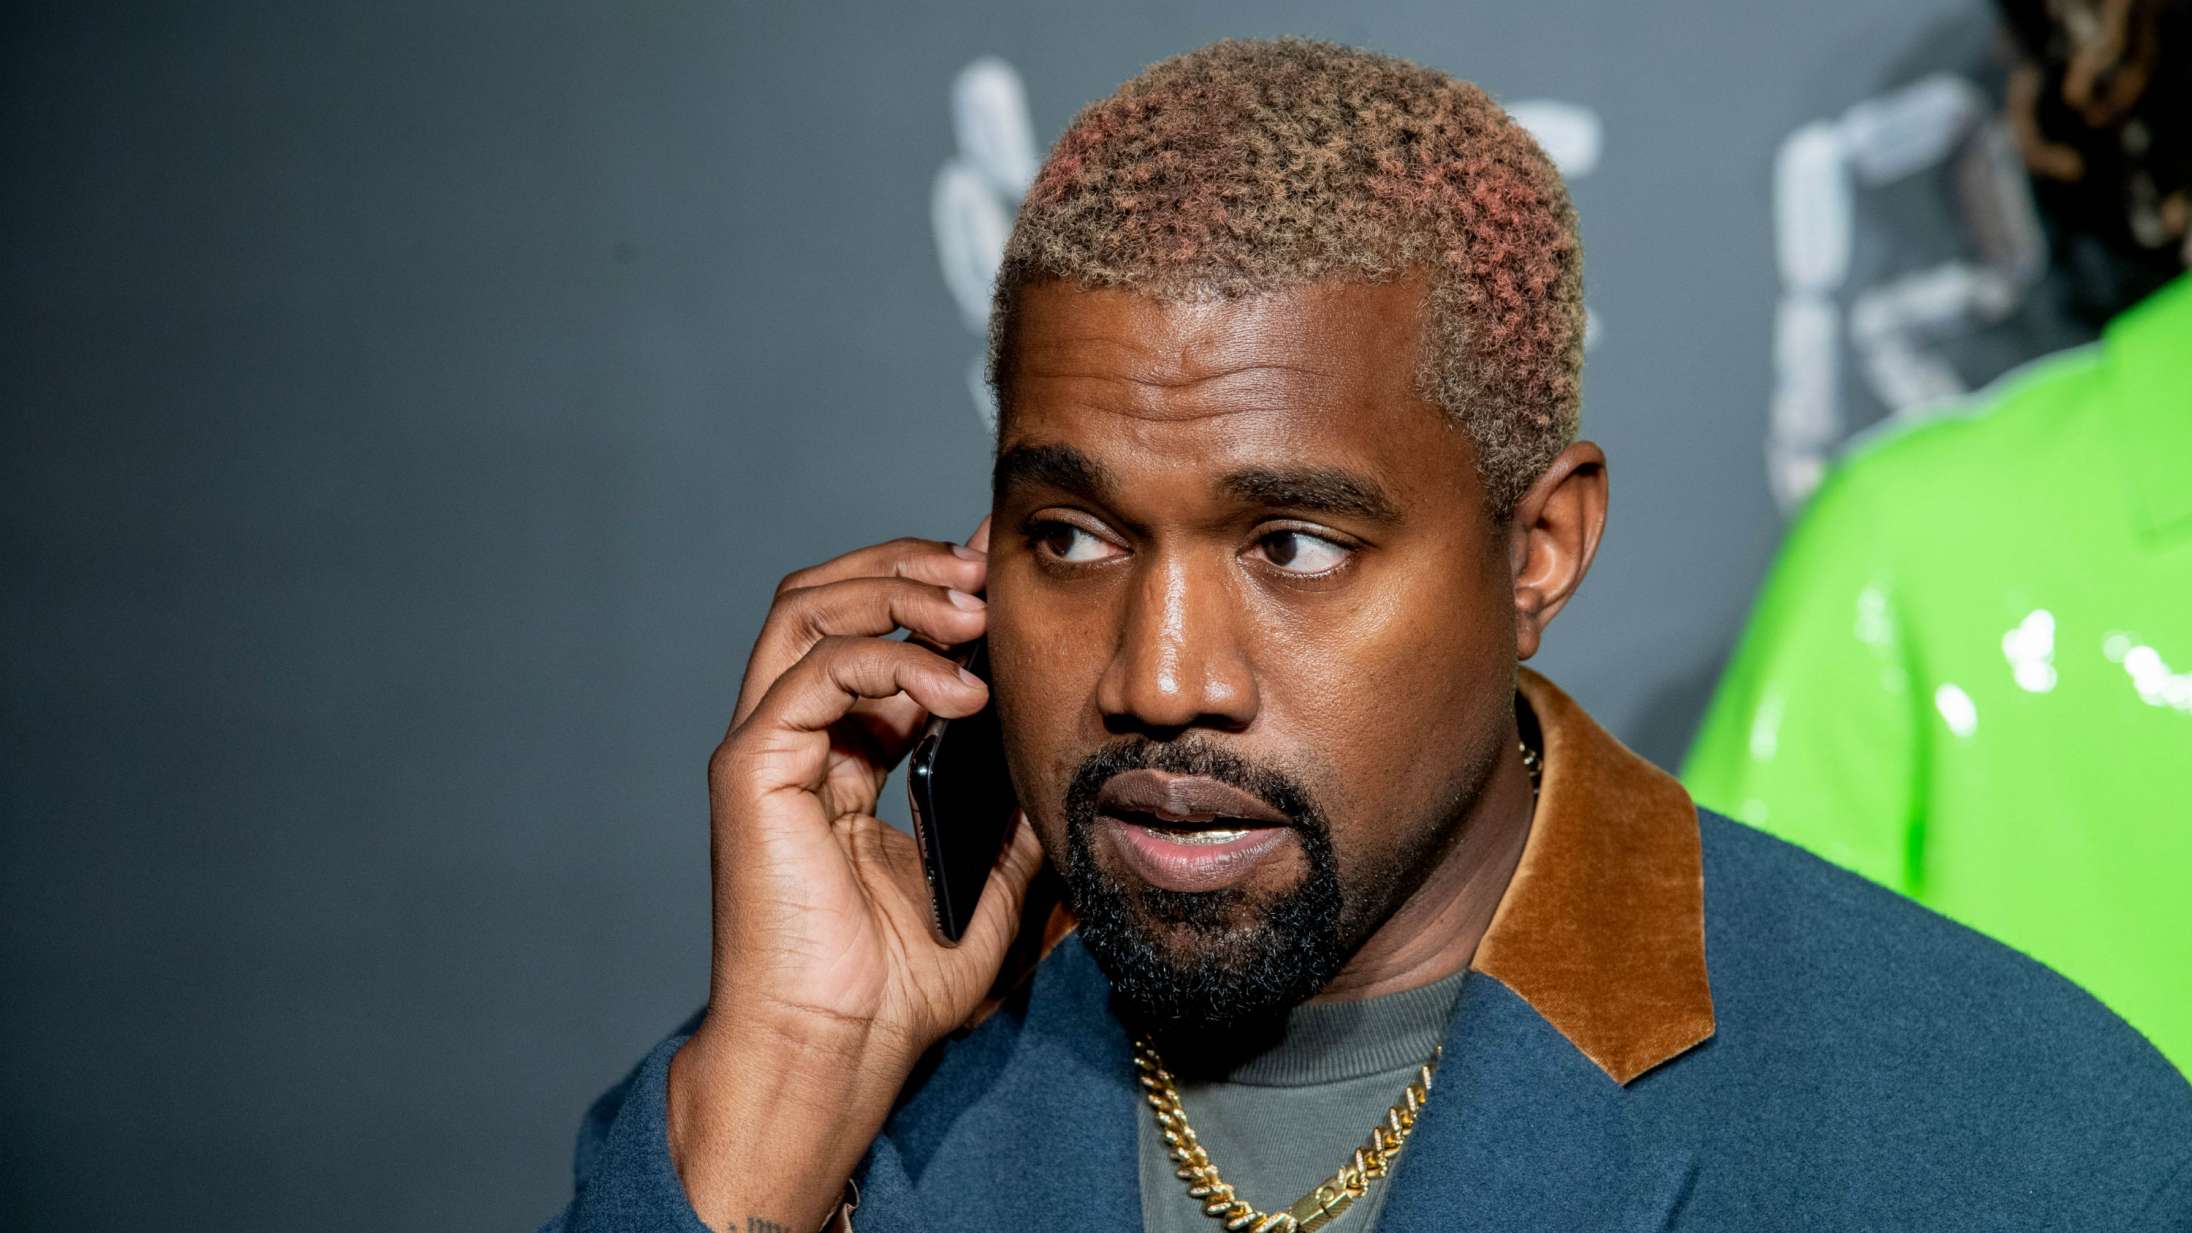 Kendisser reagerer på Kanye Wests præsidentkampagne: »Ikke nu, Kanye. Seriøst«